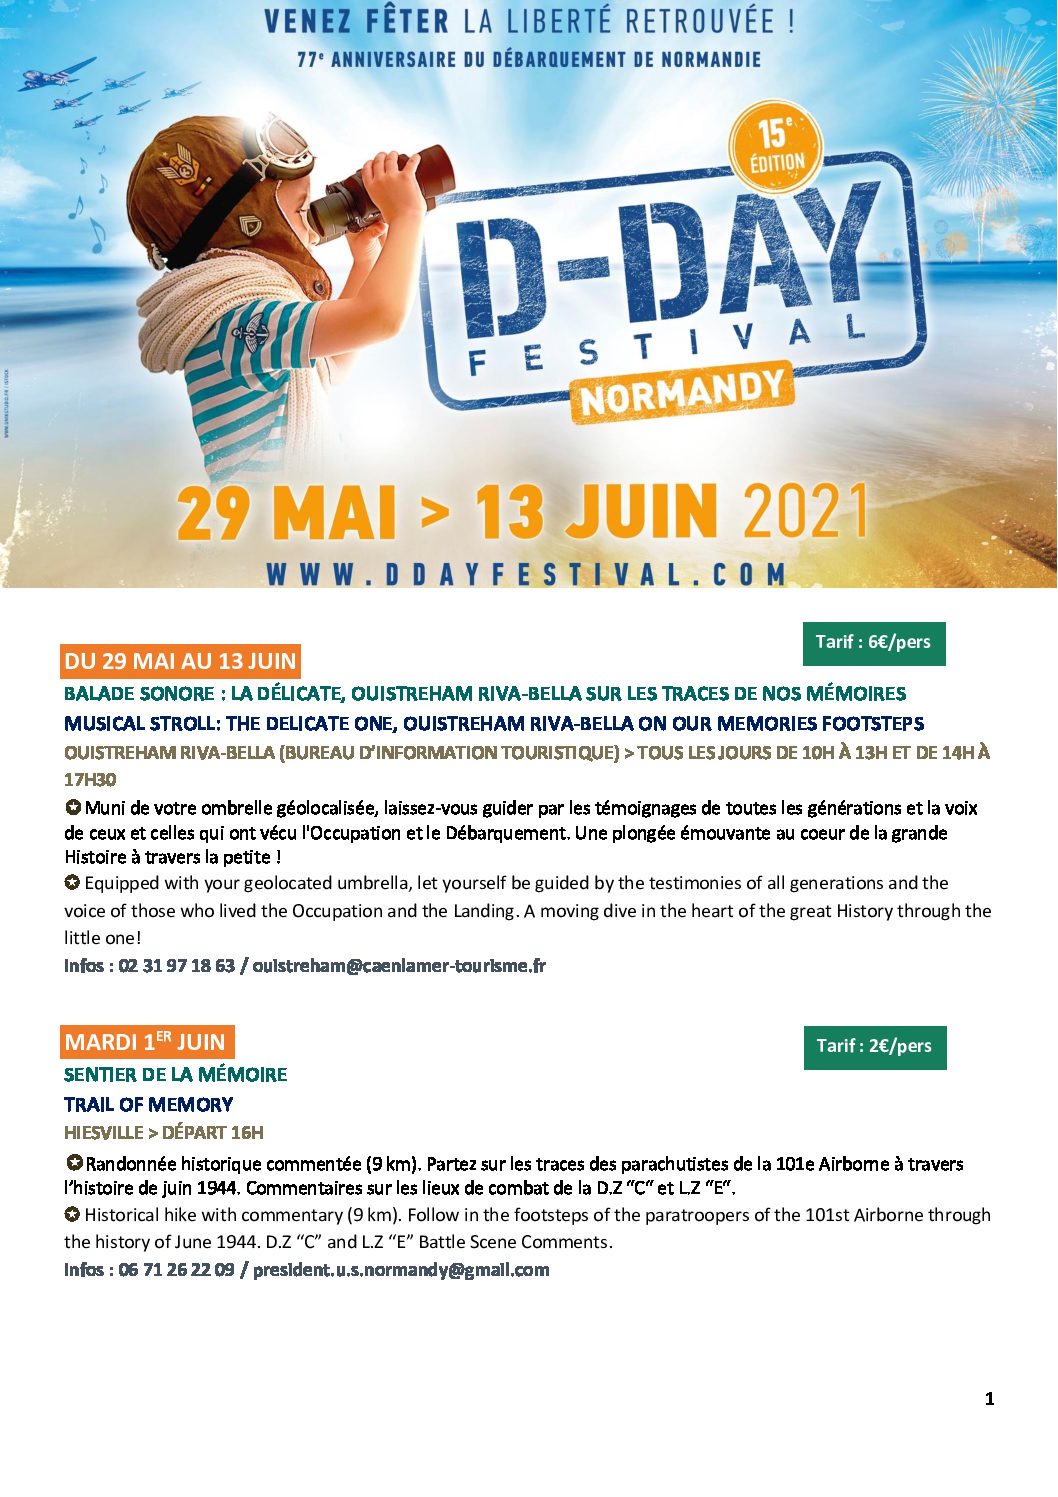 DDay festival Normandy 15ème édition 29 mai 13 juin 2021 Maison